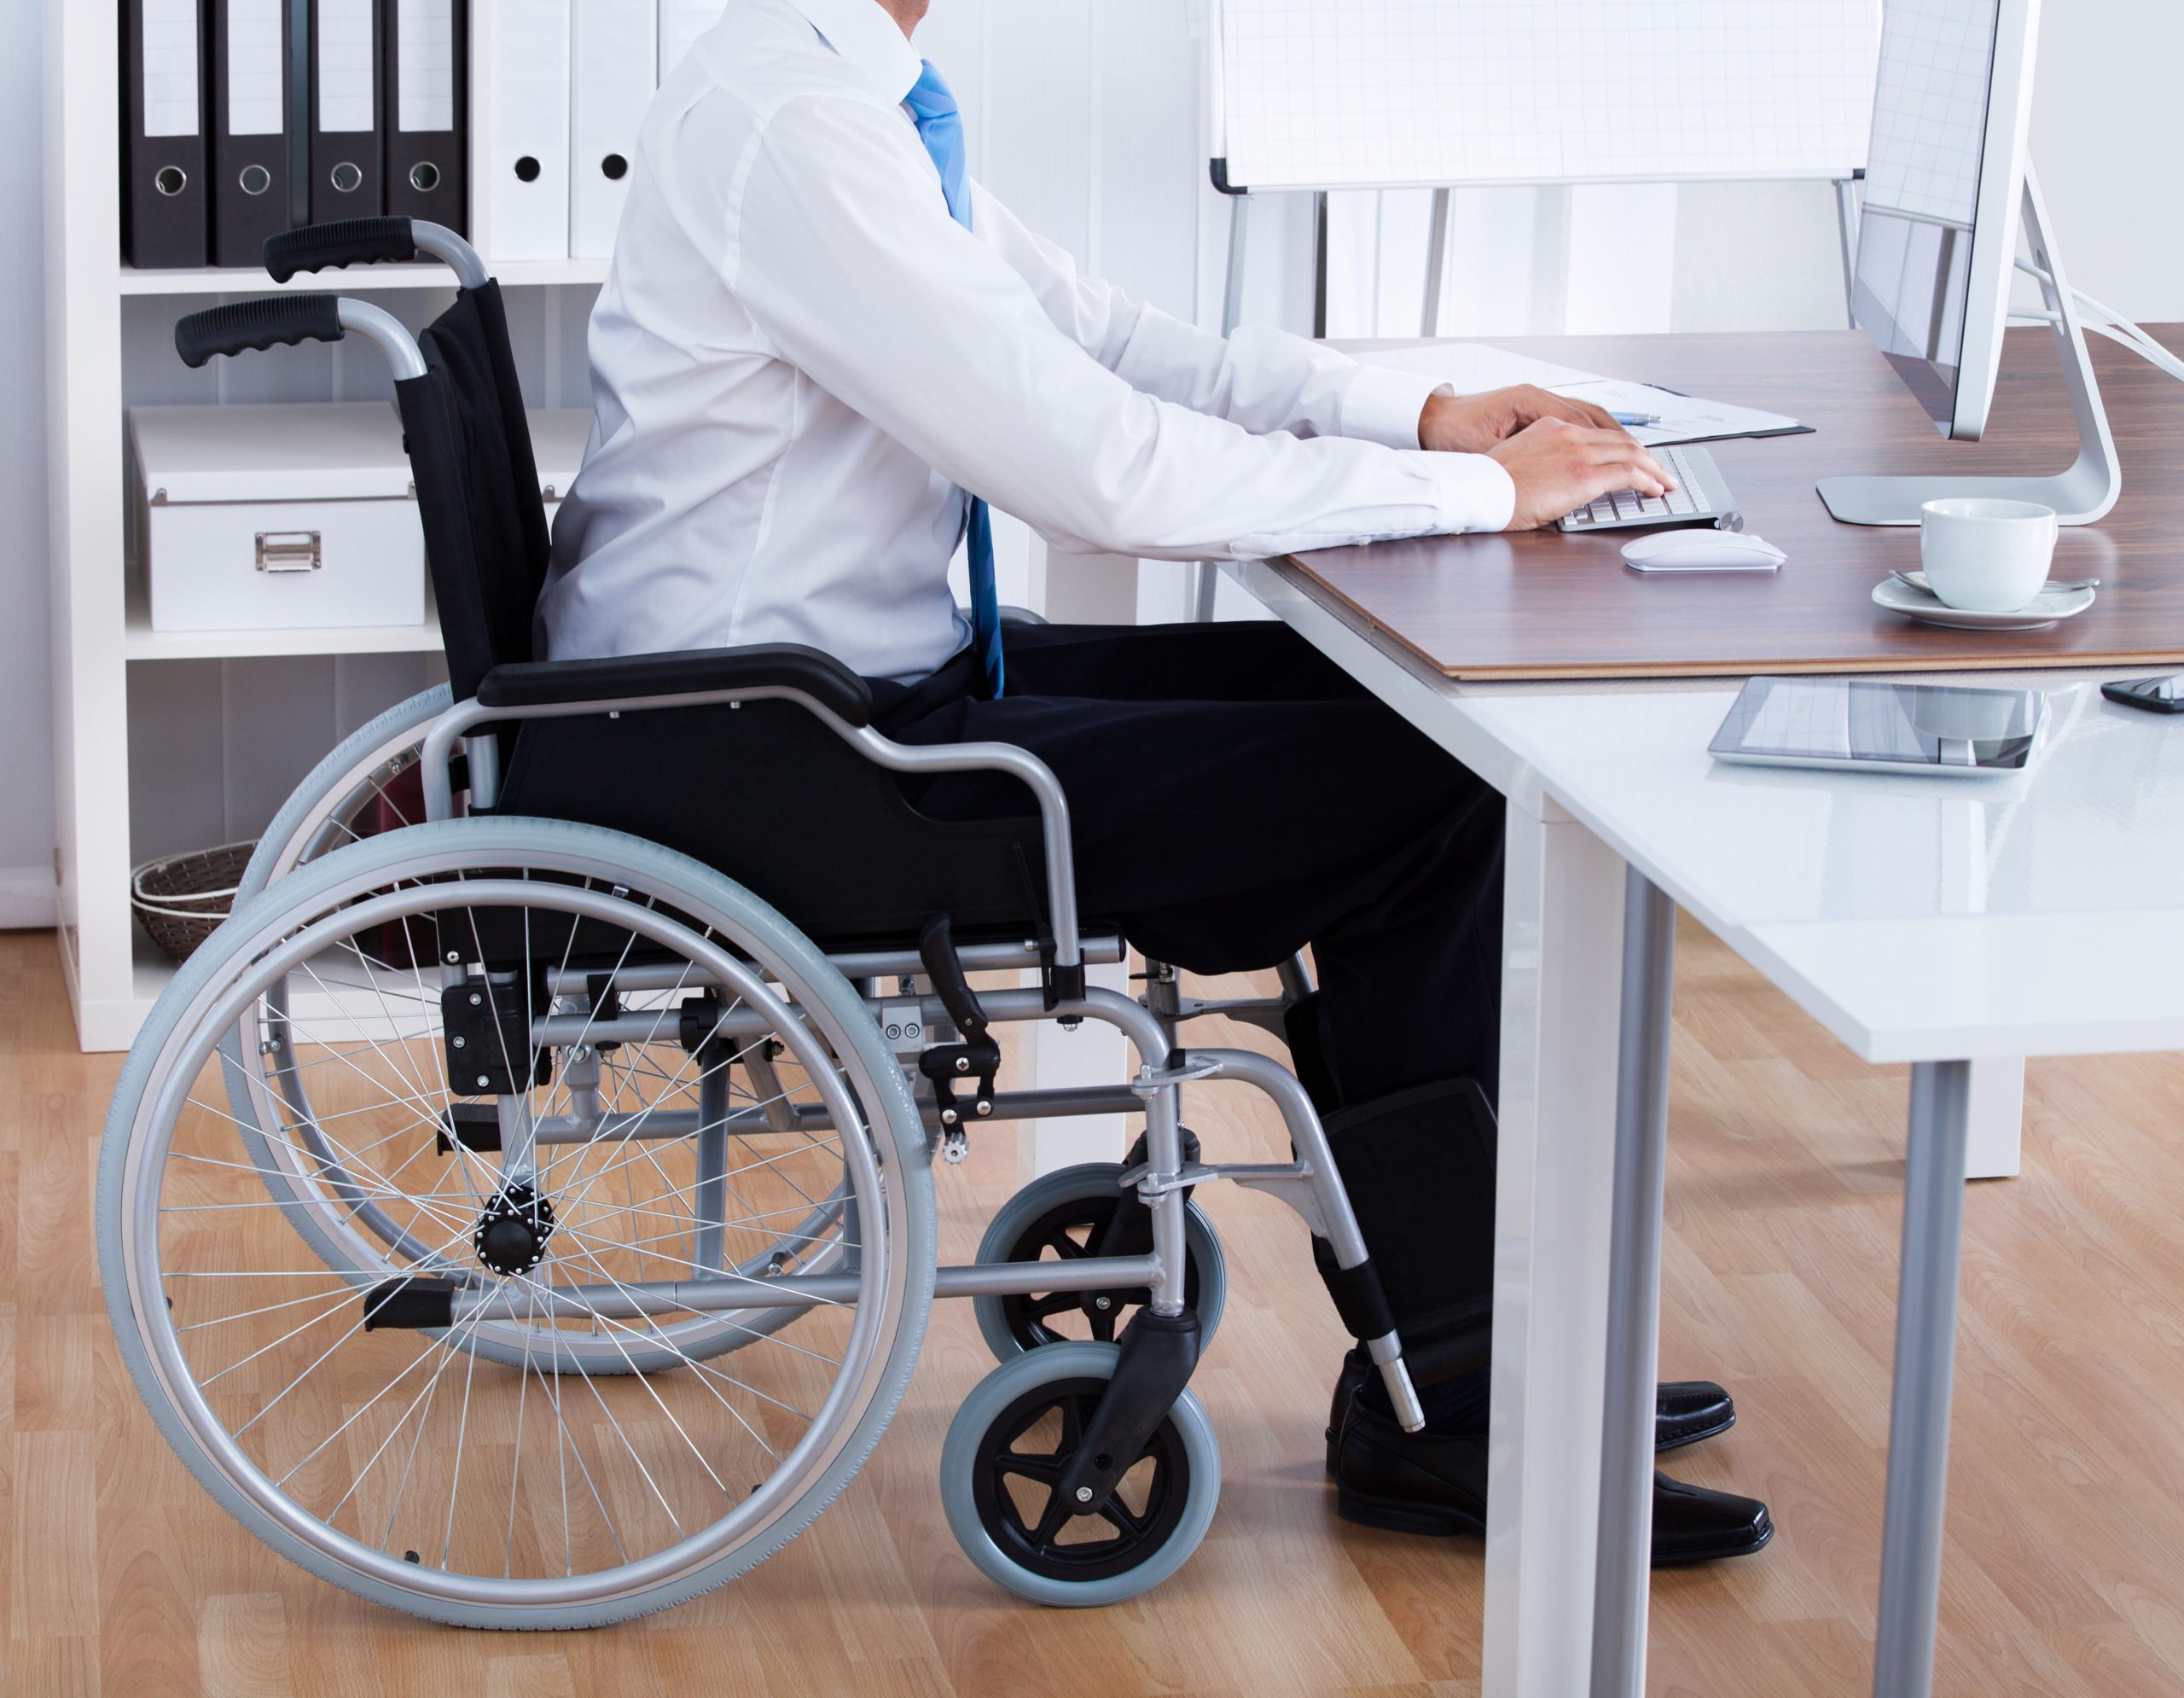 Работа инвалиду рабочая группа. Рабочие места для инвалидов. Трудоустройство инвалидов. Трудоустройство инаалид. Рабочее место для людей с ограниченными возможностями.